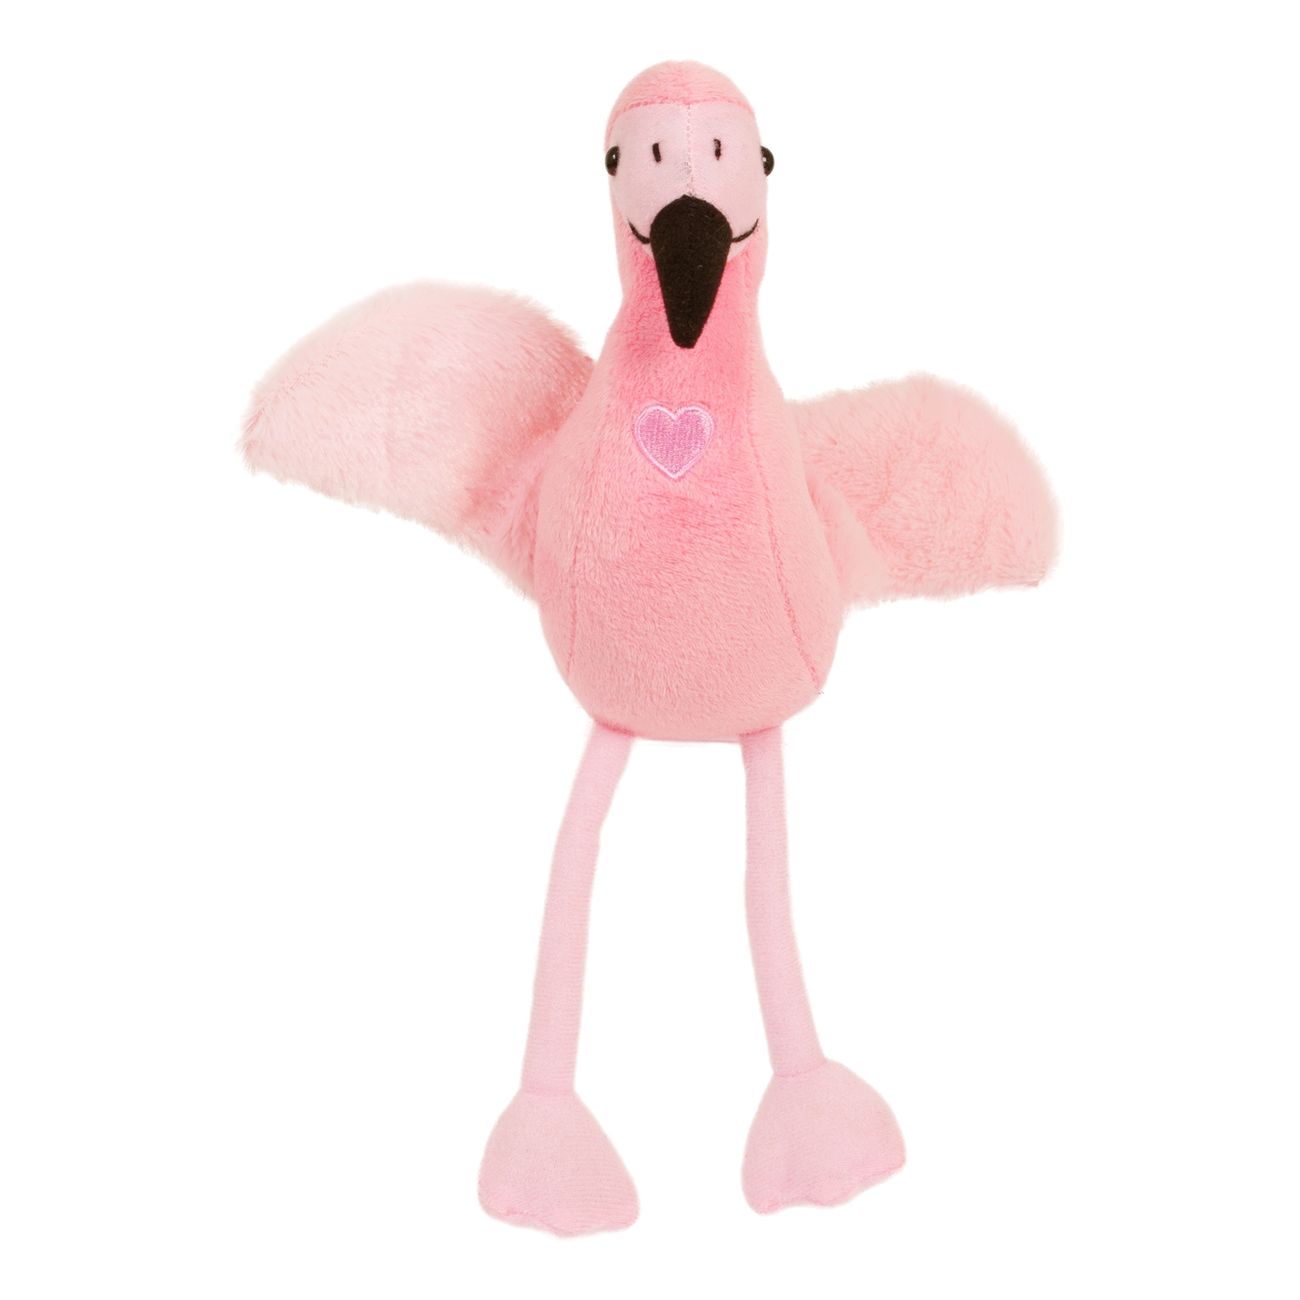 mjukisdjur-flamingo-med-hjarta-102393-1